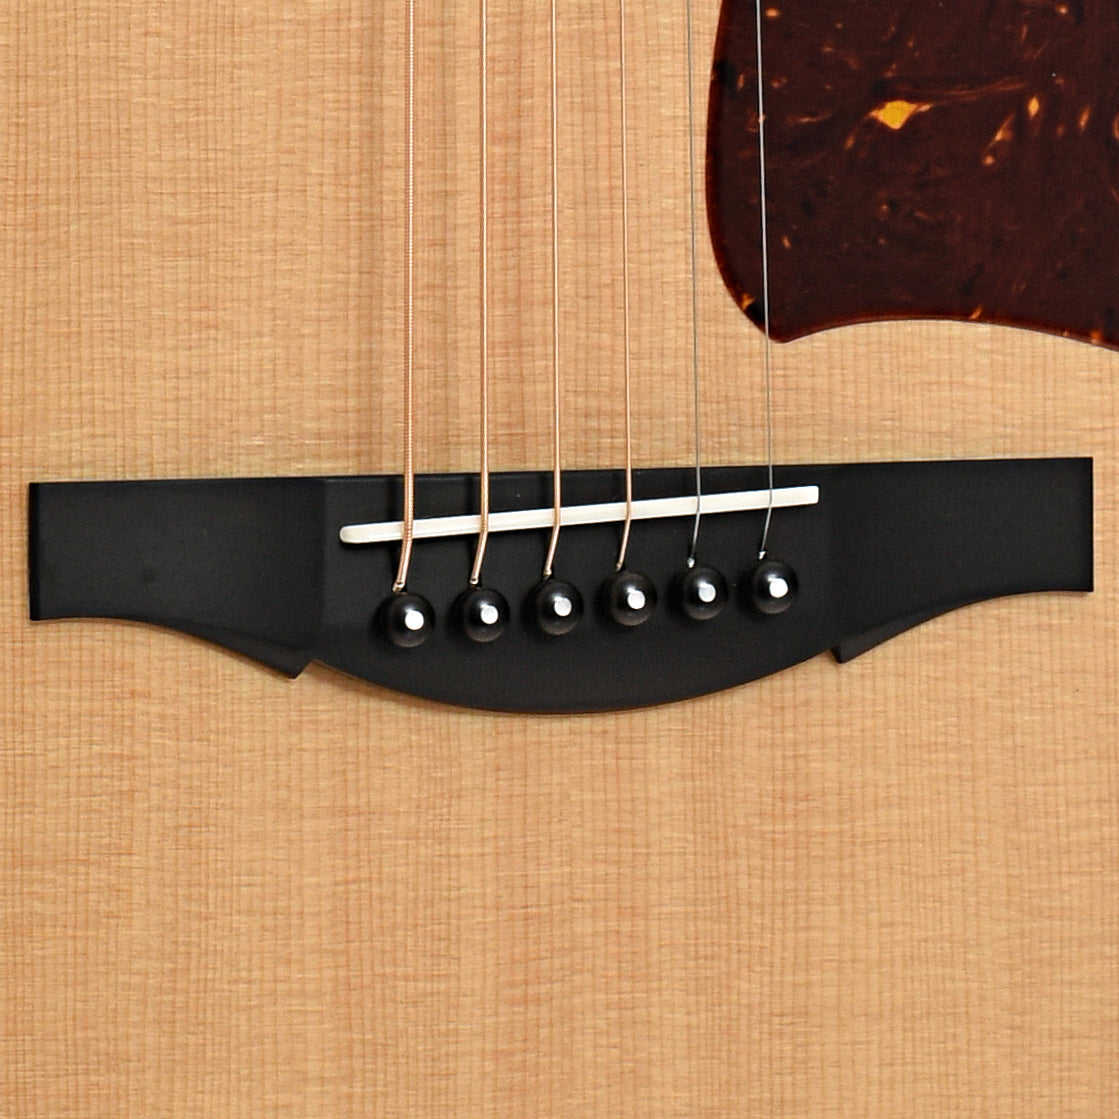 Bridge of Collings SJ Indian Guitar